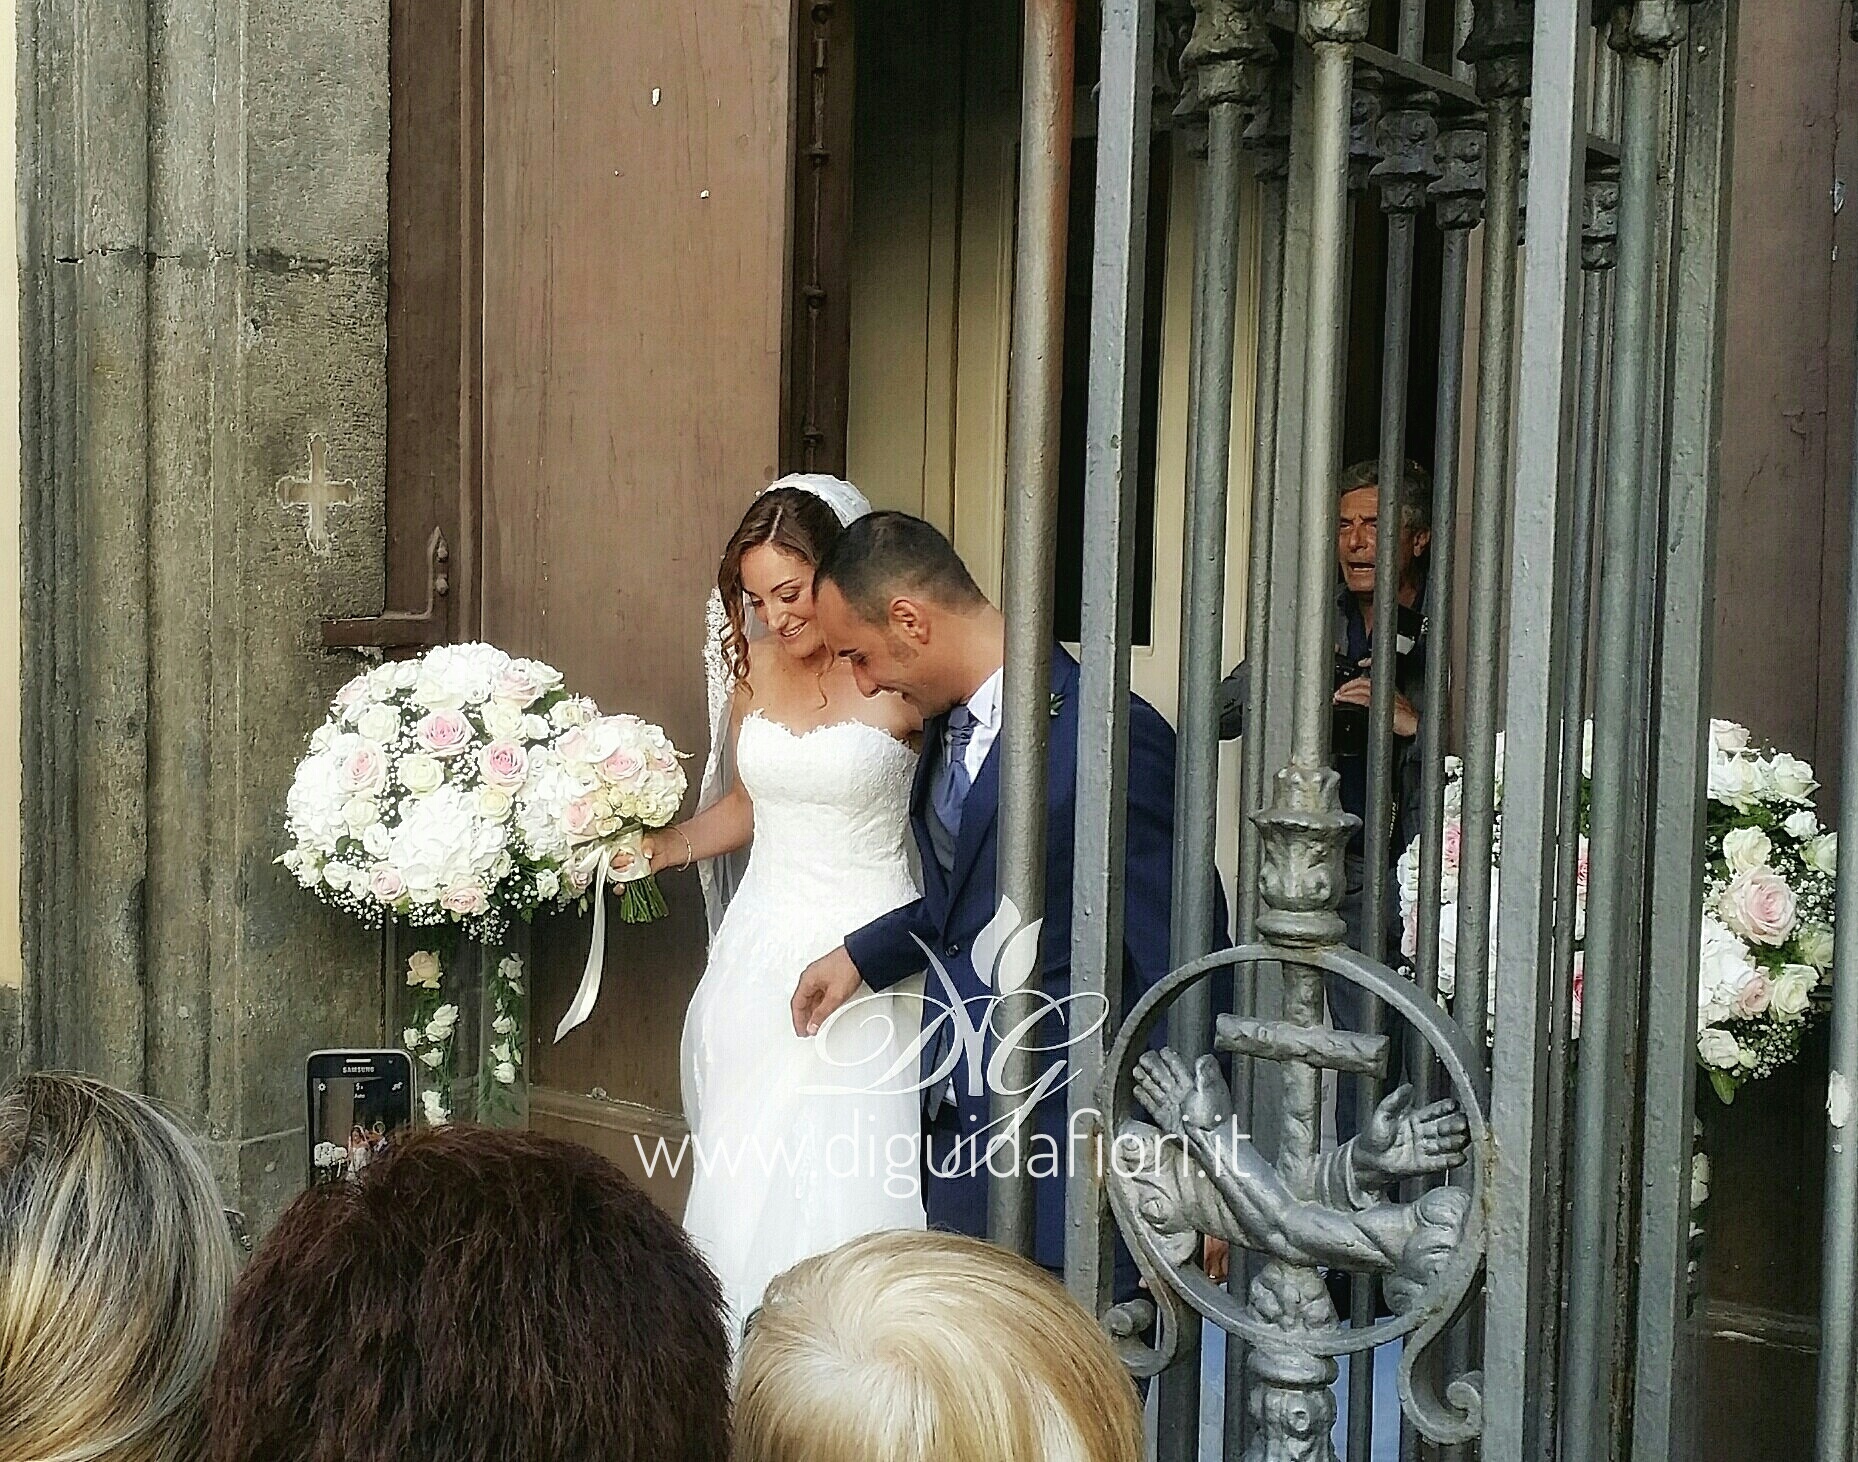 Addobbo floreale per matrimonio – Chiesa Santa Caterina a Chiaia Napoli